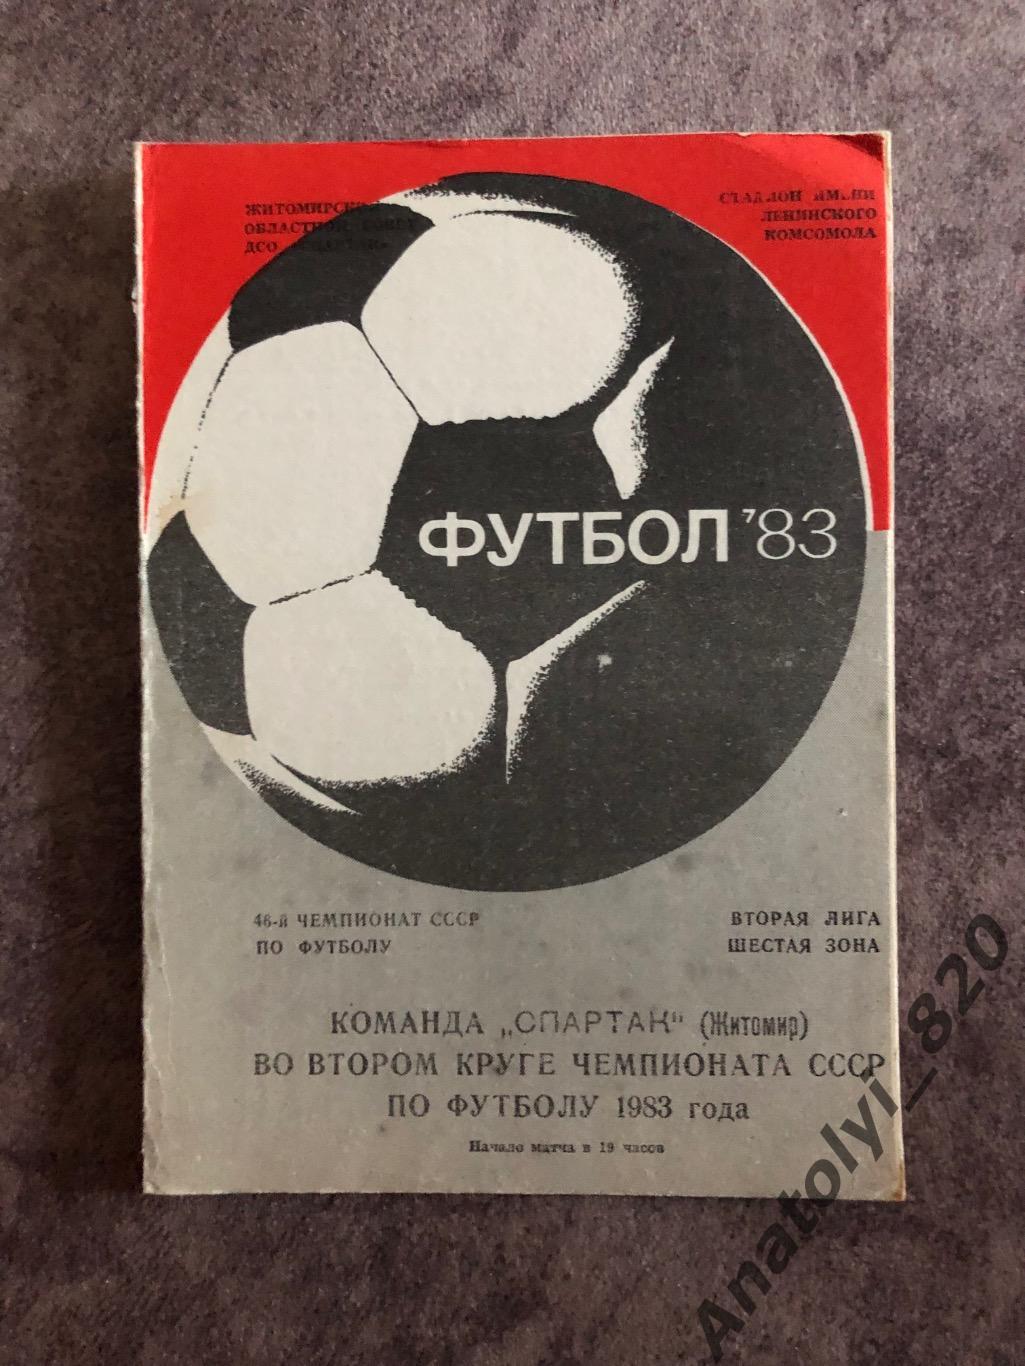 Спартак Житомир во втором круге чемпионата СССР по футболу 1983 года